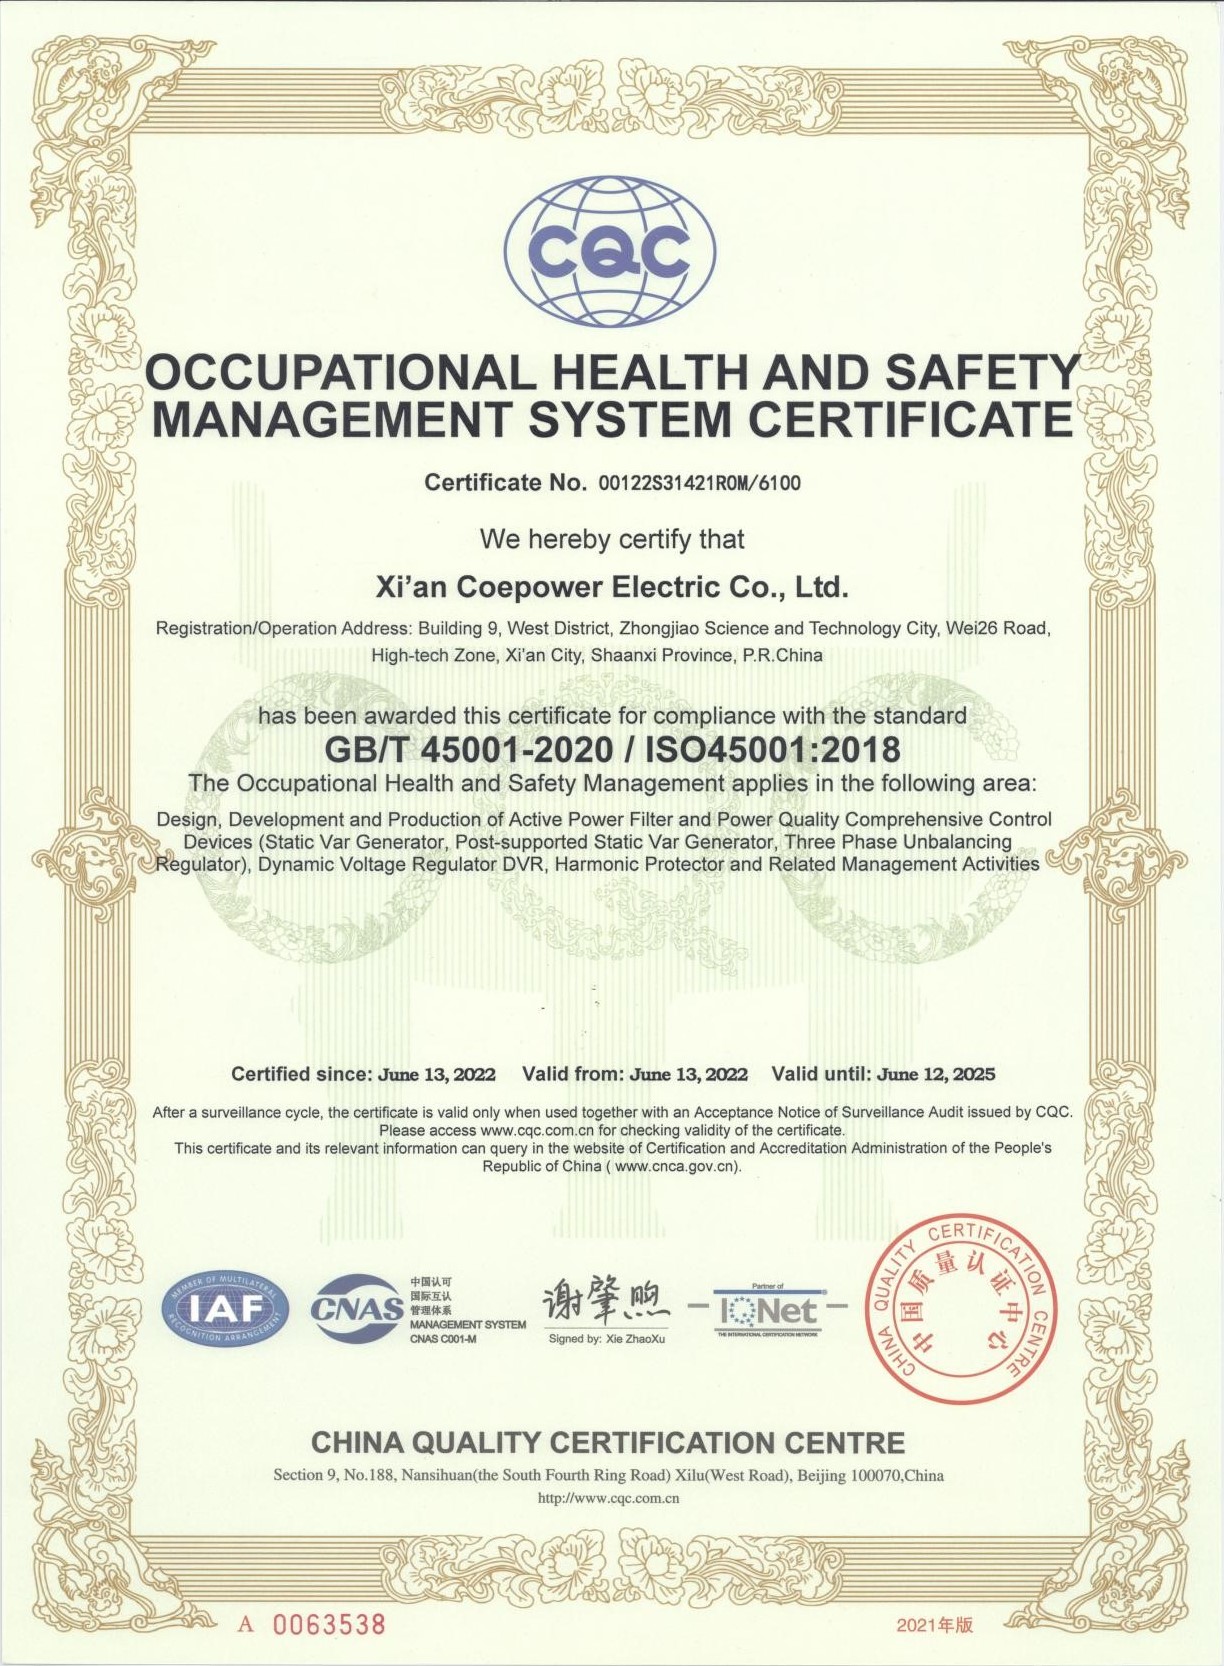  职业健康安全管理体系认证证书--英文